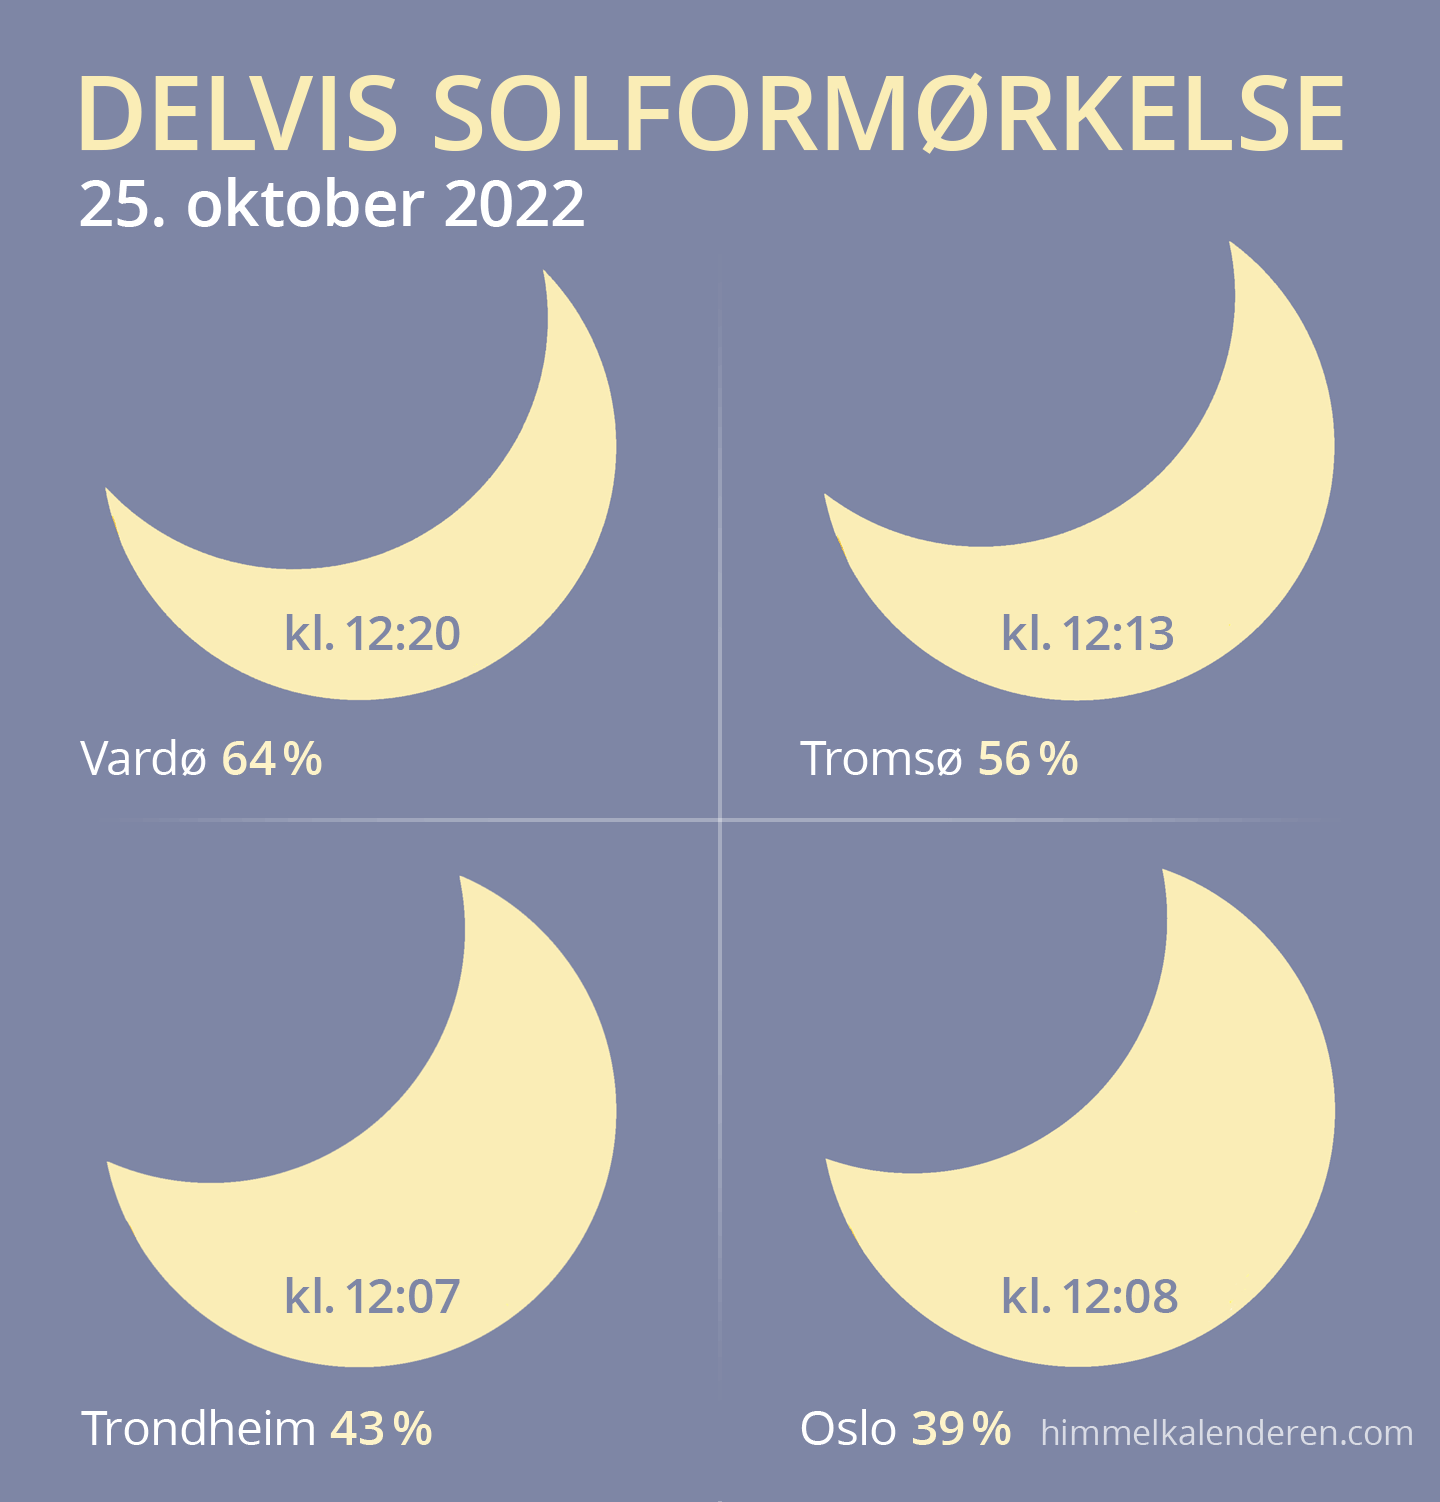 Delvis solformørkelse 25. oktober 2022 i Norge